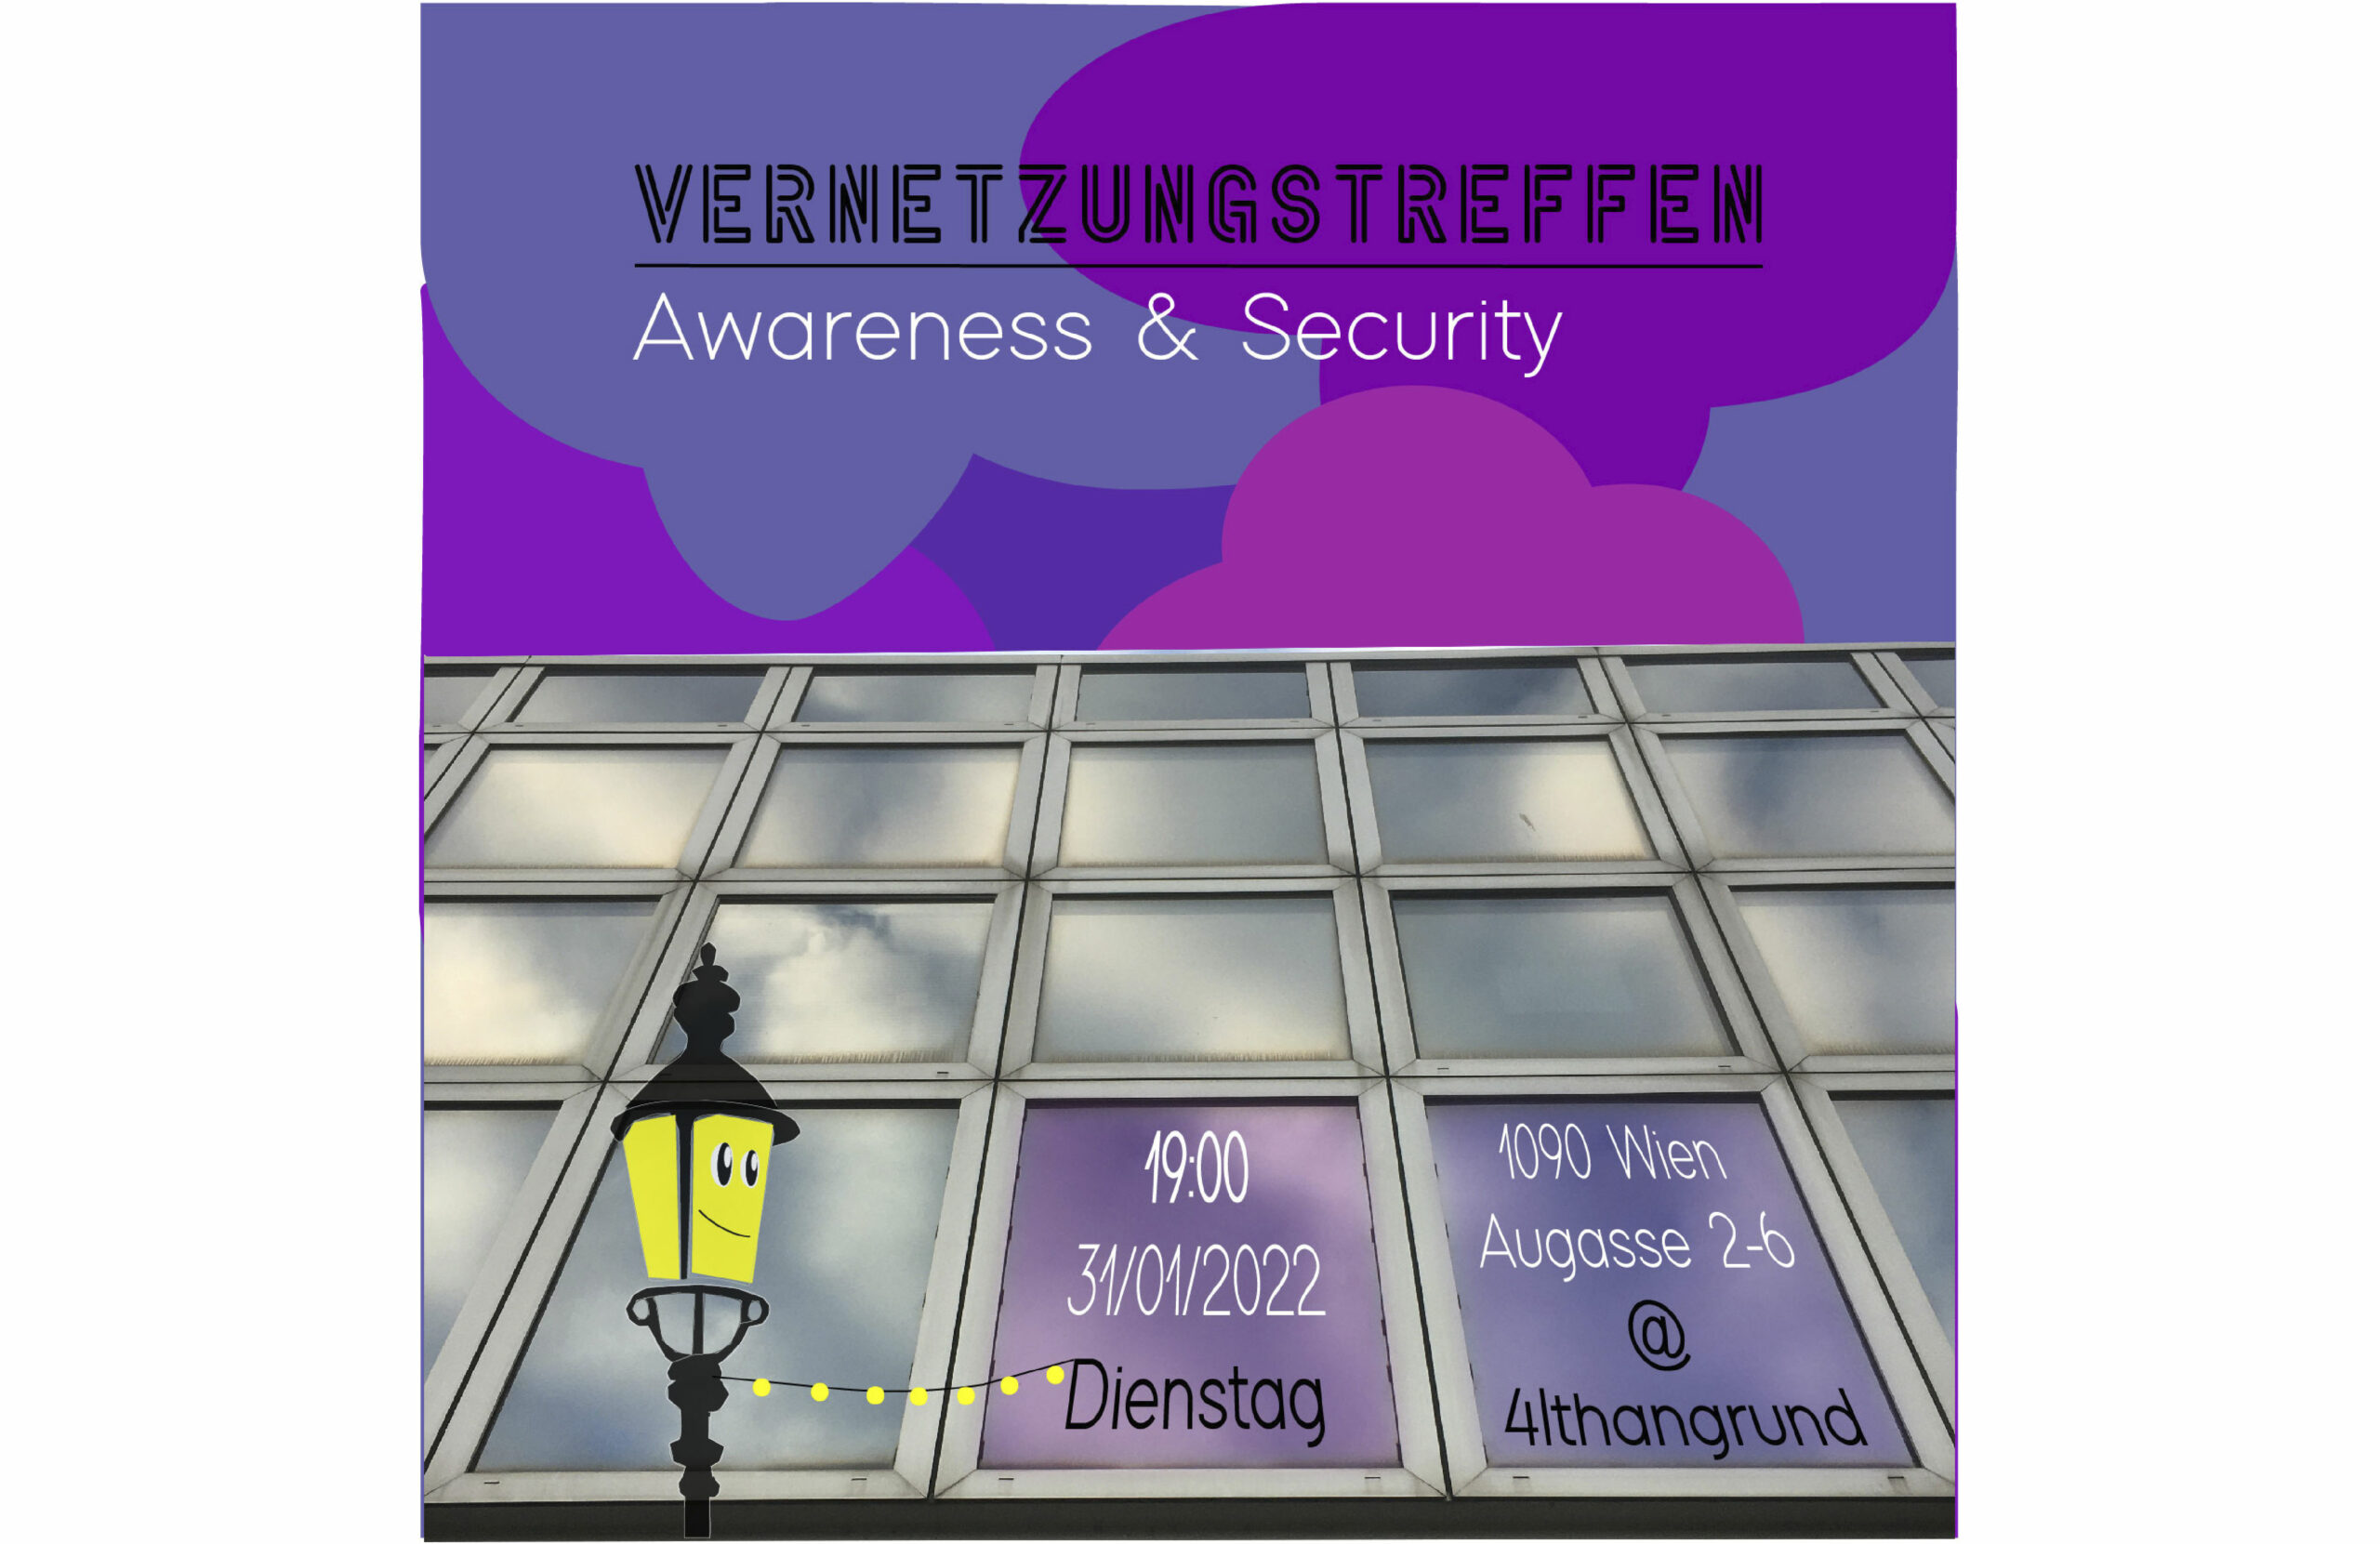 Vernetzungstreffen Awareness & Security 31-01-23